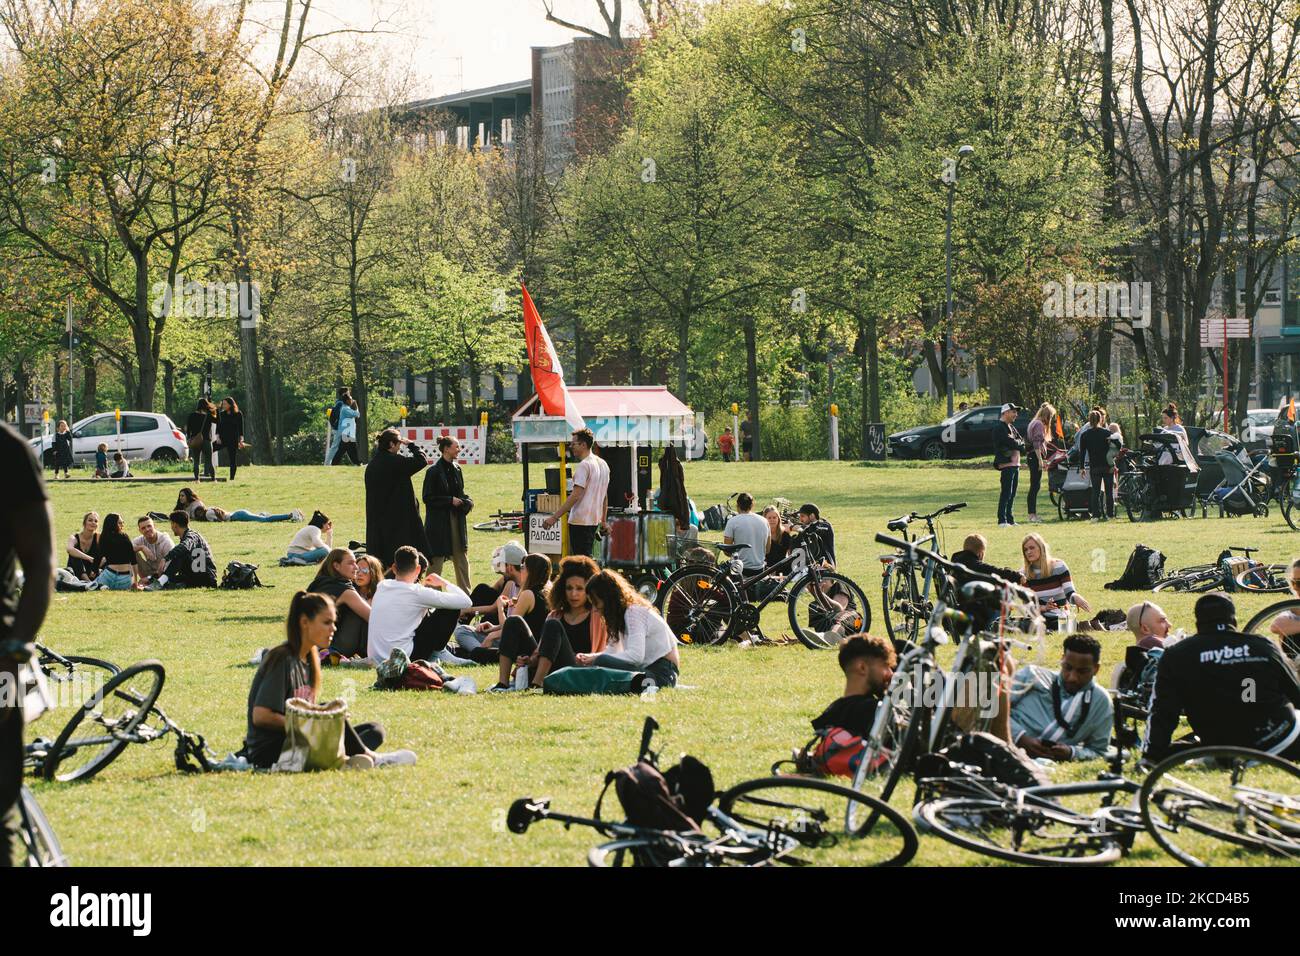 Die Menschen entspannen sich im Innerer Grünguertel Park, während das frühlingshafte Wetter in Köln am 20. April 2021 19 Grad Celsius erreicht (Foto: Ying Tang/NurPhoto) Stockfoto